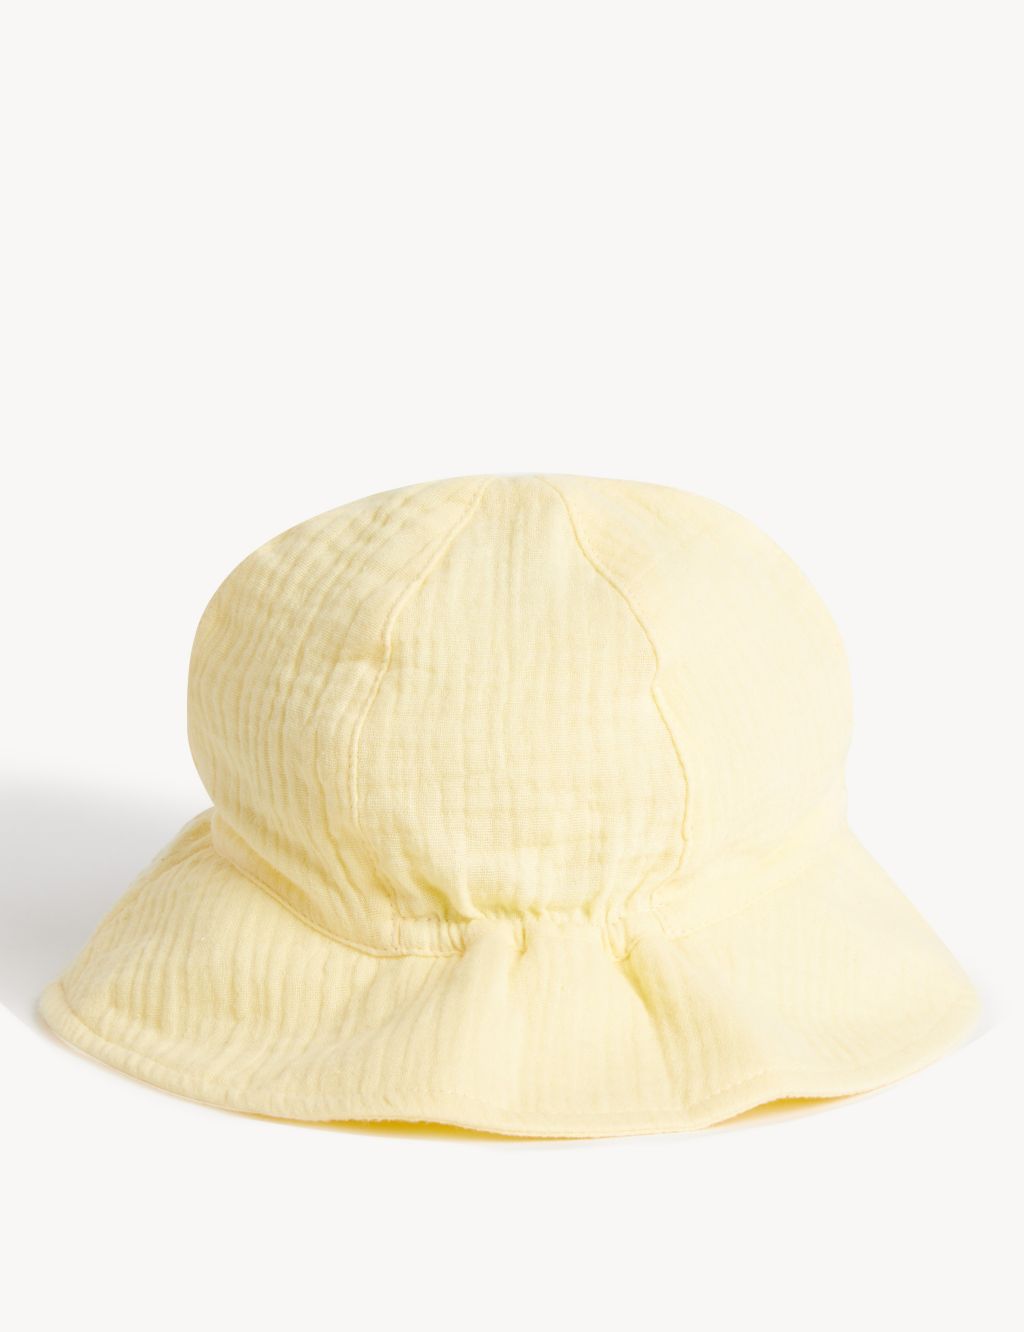 Kids' Pure Cotton Plain Sun Hat (0-6 Yrs) image 2